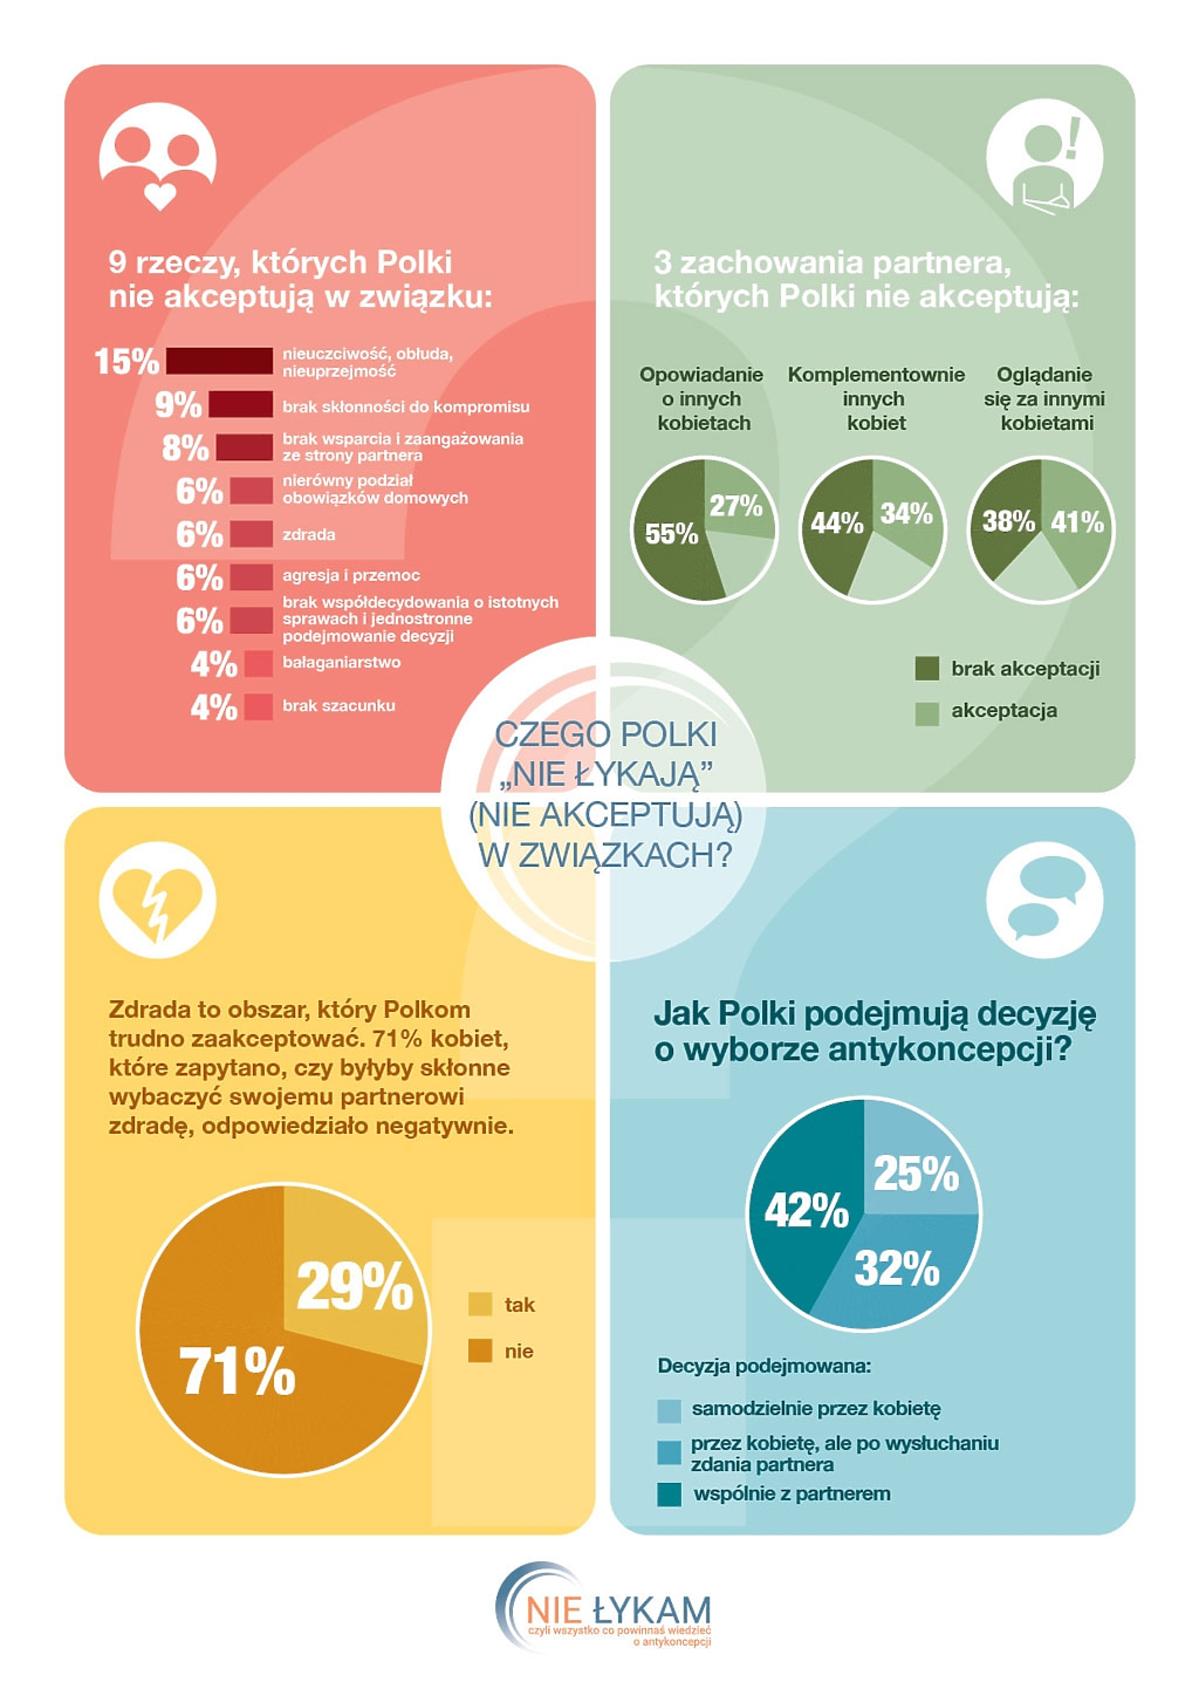 Badania TNS Polska w ramach kampanii edukacyjno – informacyjnej „Nie łykam, czyli wszystko, co powinnaś wiedzieć o antykoncepcji”